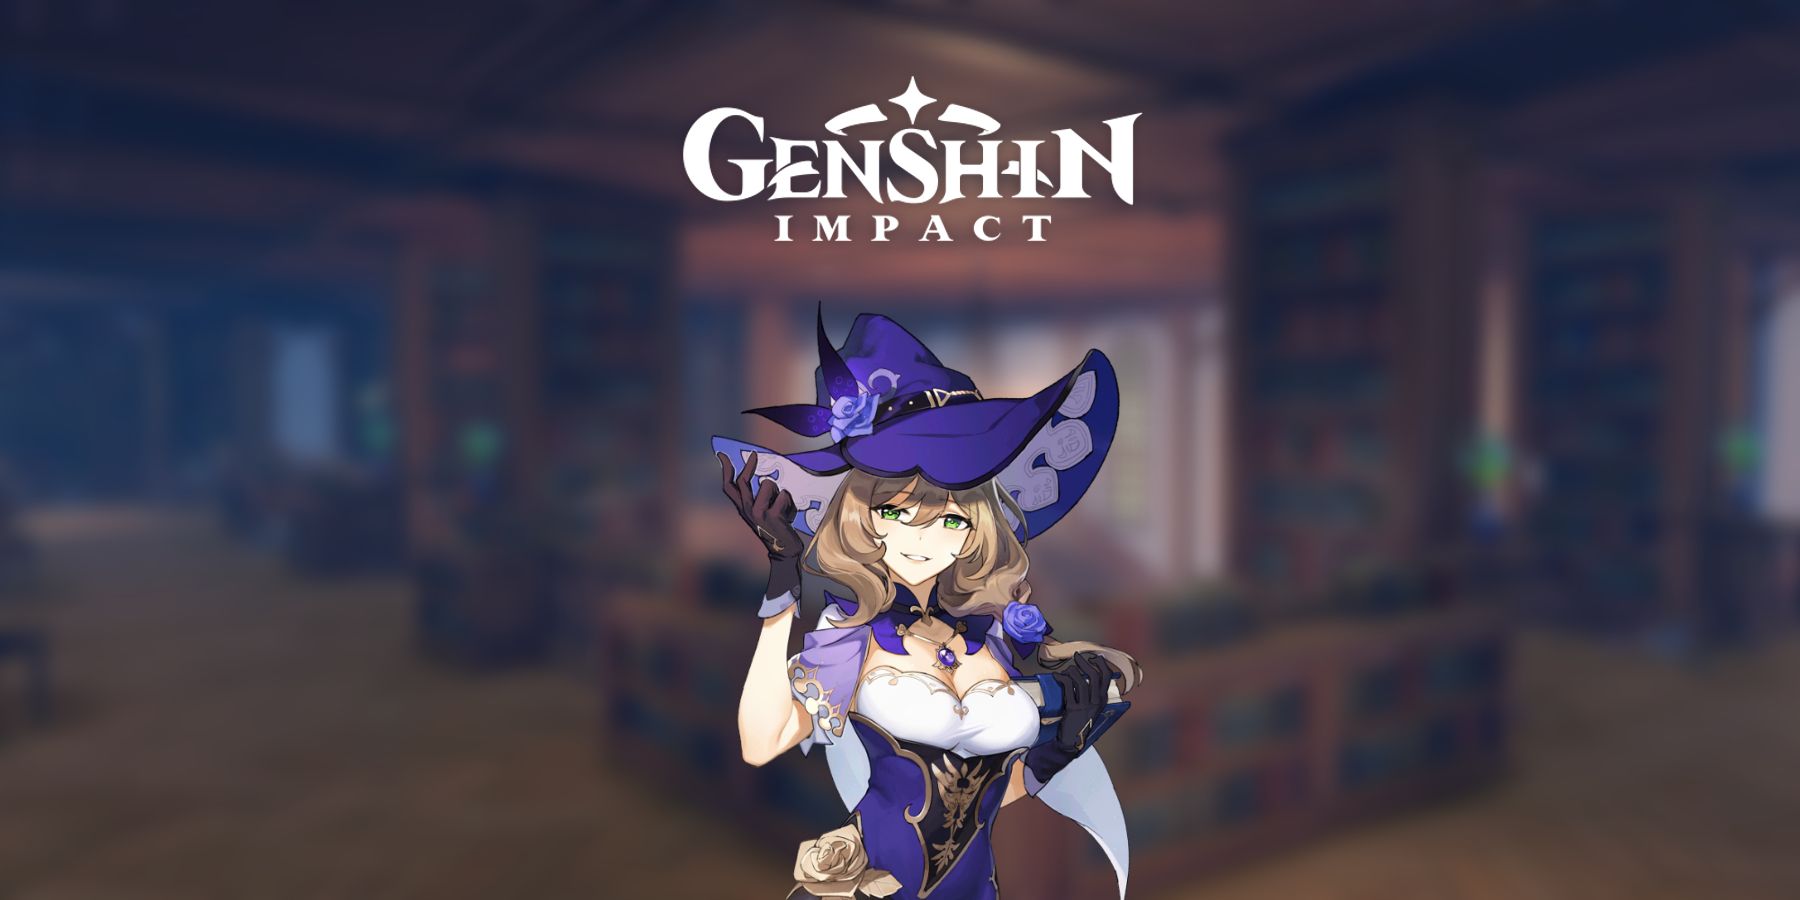 Genshin Impact: ليزا أقوى بكثير في العلم مما هي عليه في اللعبة